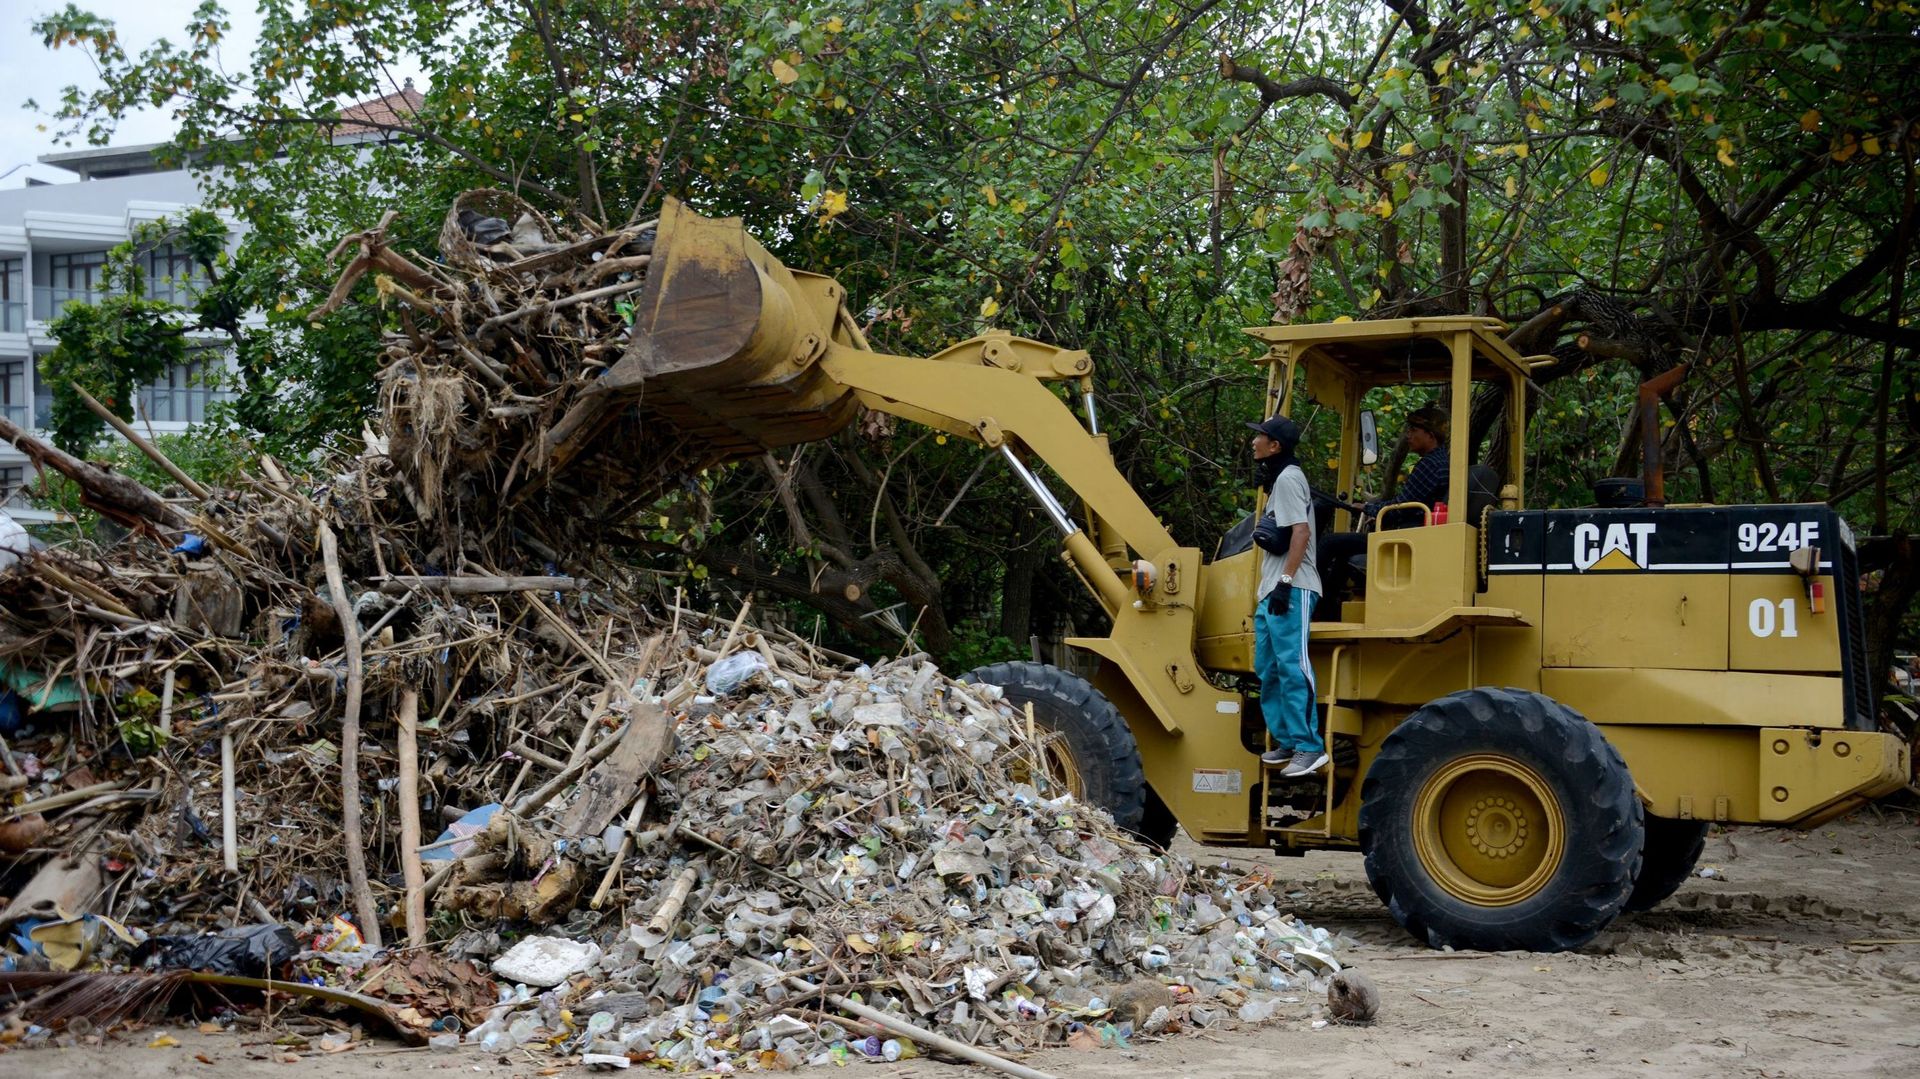 La plage de Kuta à Bali croule sous 30 tonnes de déchets plastiques